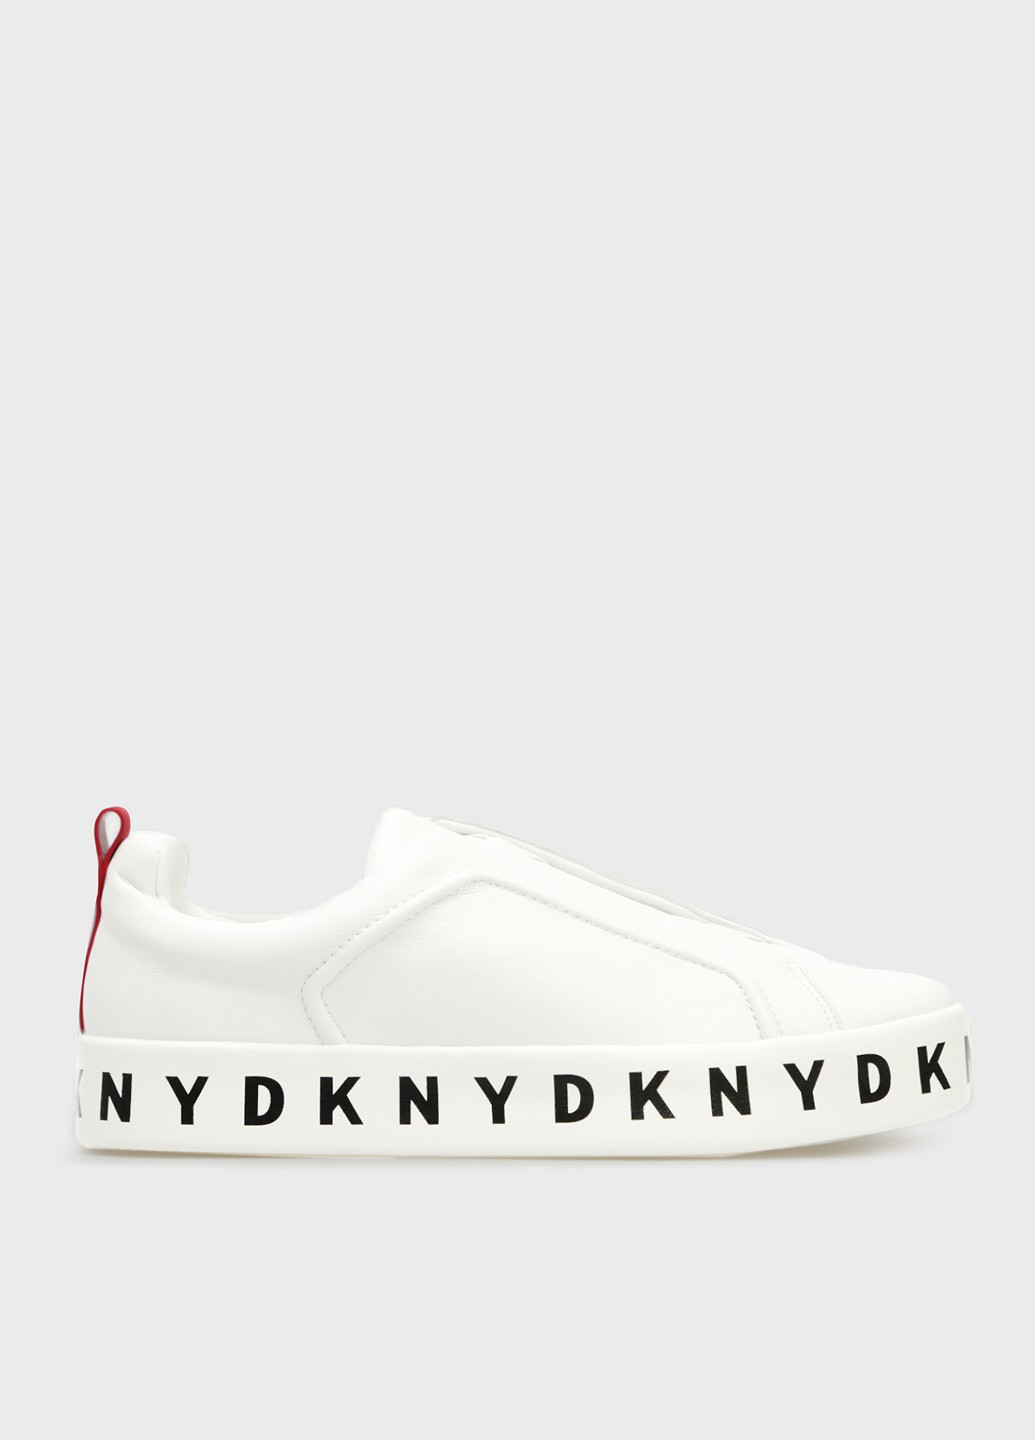 Белые слипоны DKNY с надписью